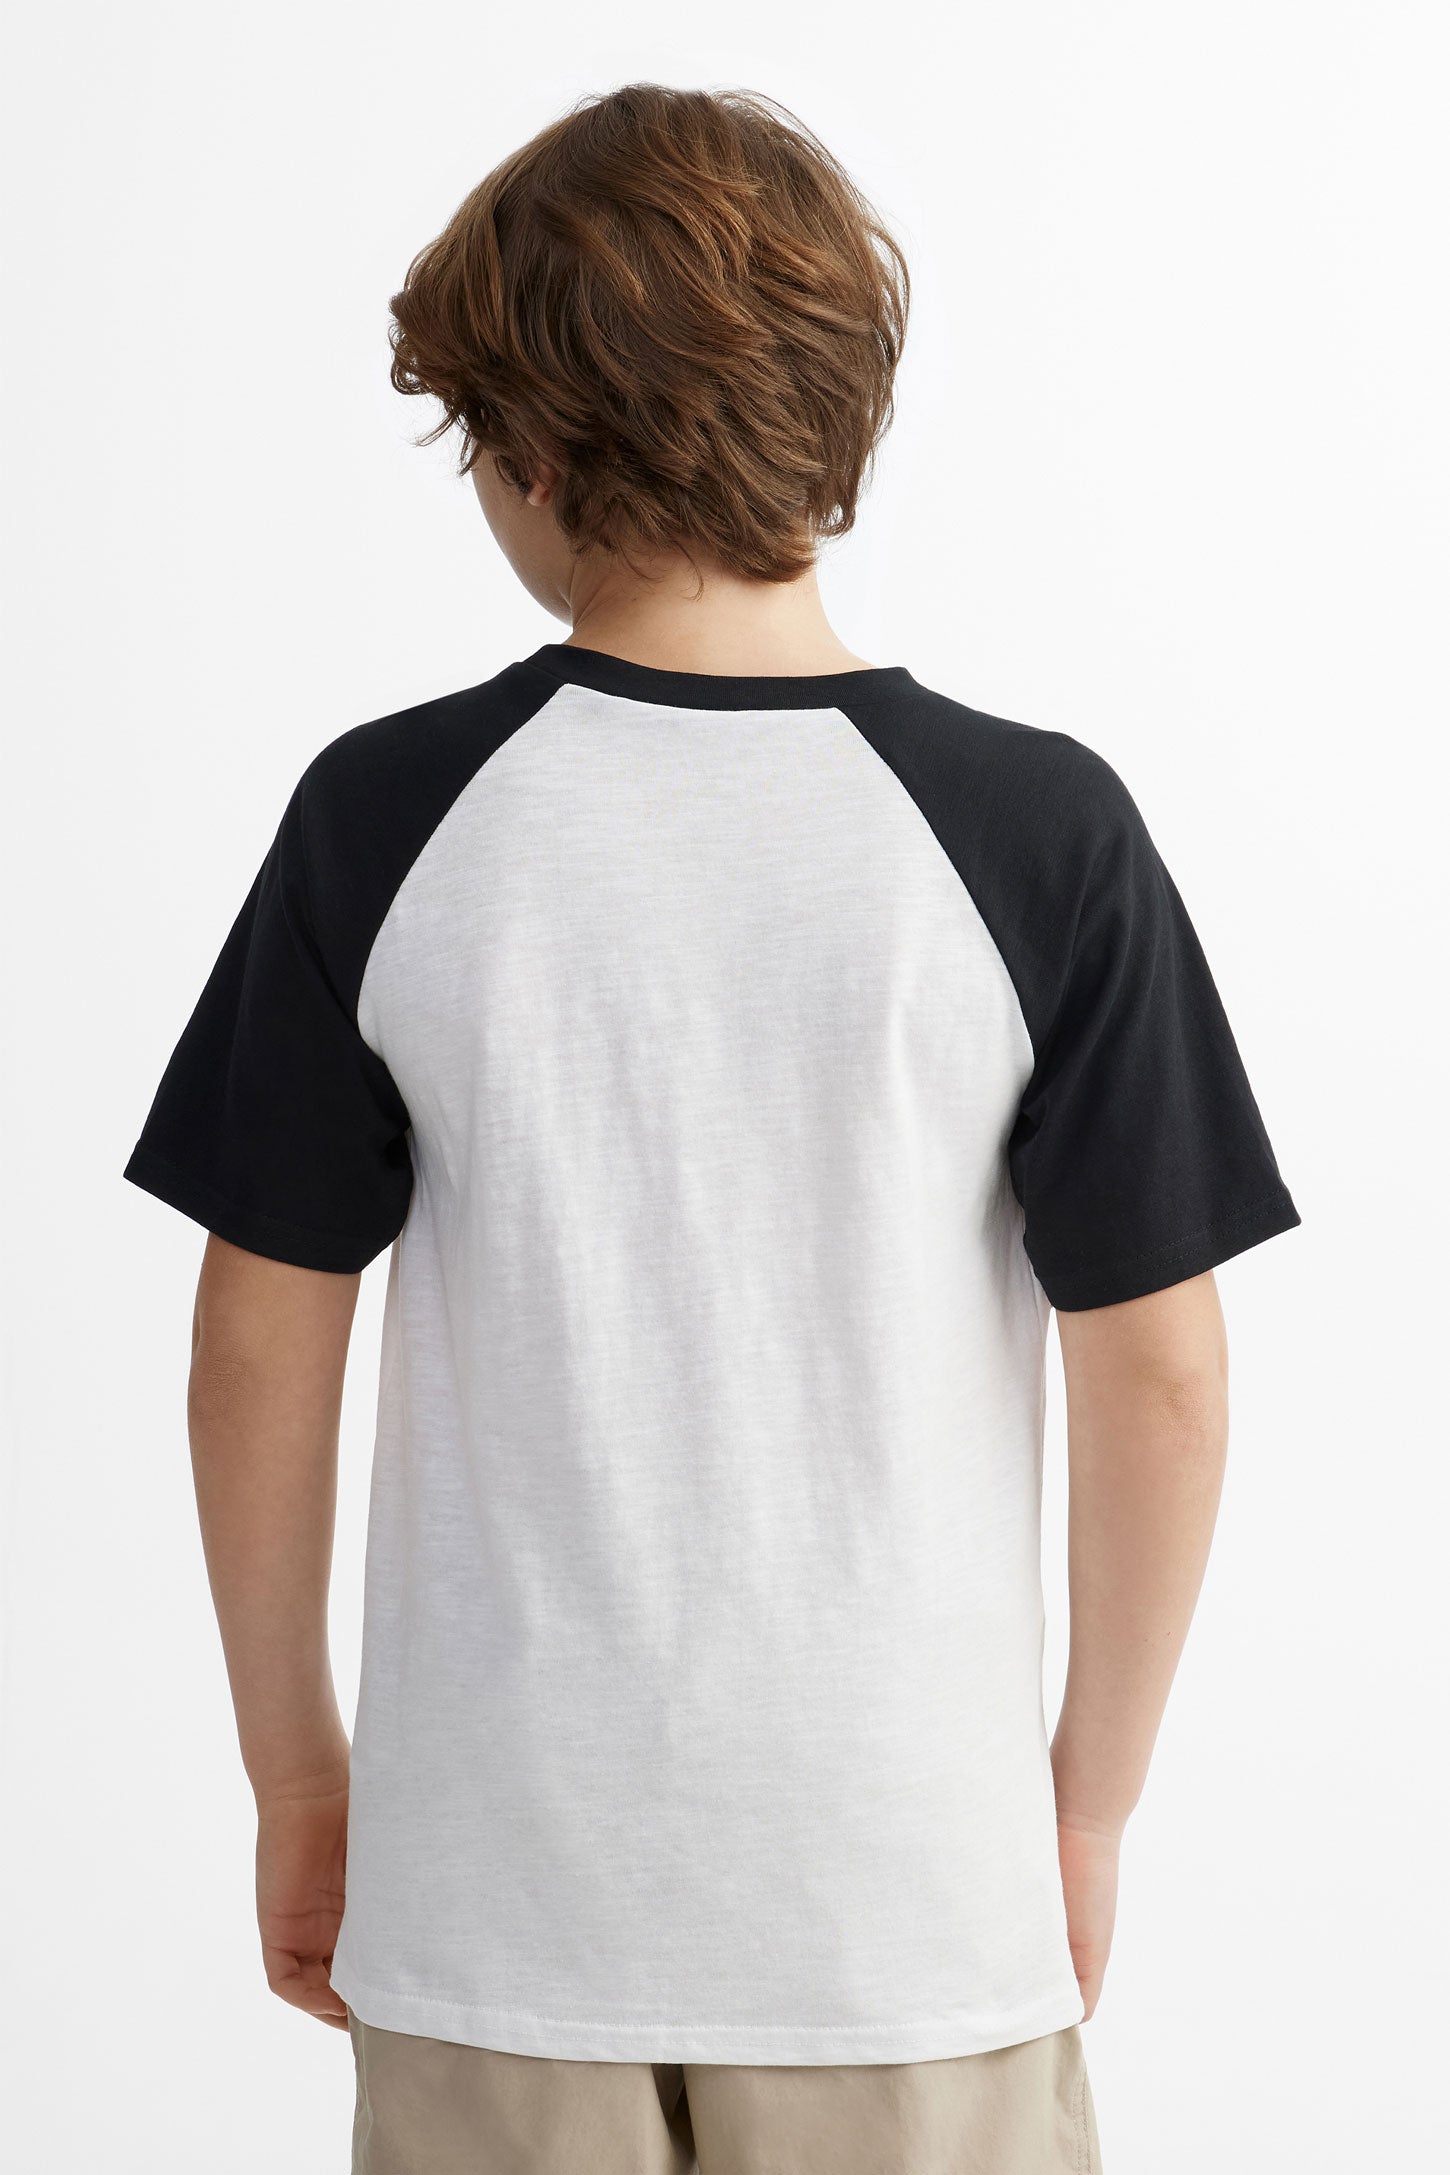 T-shirt imprimé en coton, 2/25$ - Ado garçon && NOIR